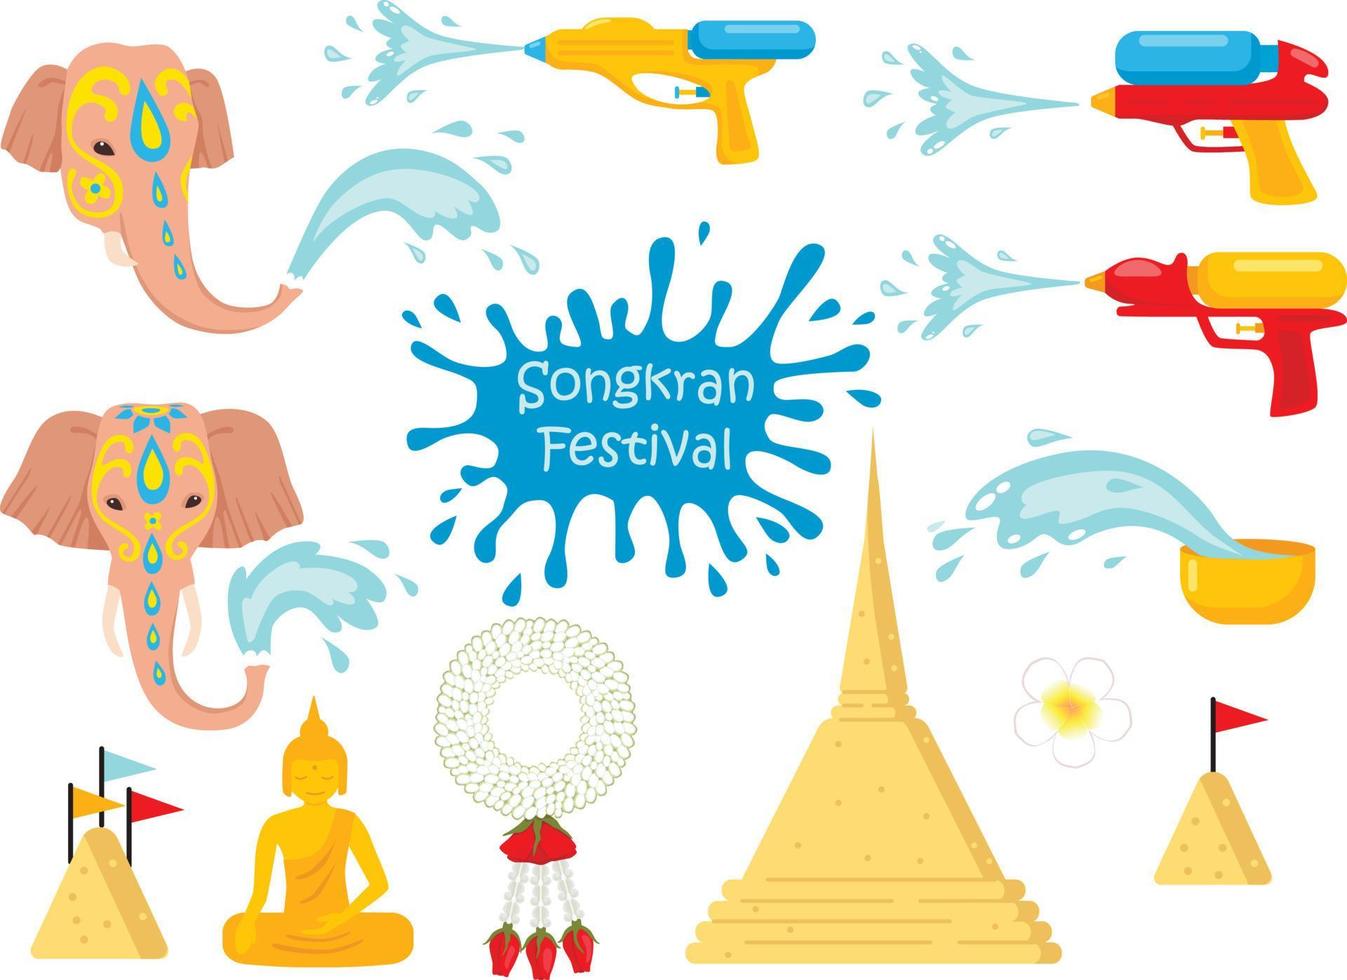 songkran festival - traditioneller neujahrstag thailands, satz bunter symbole vektor